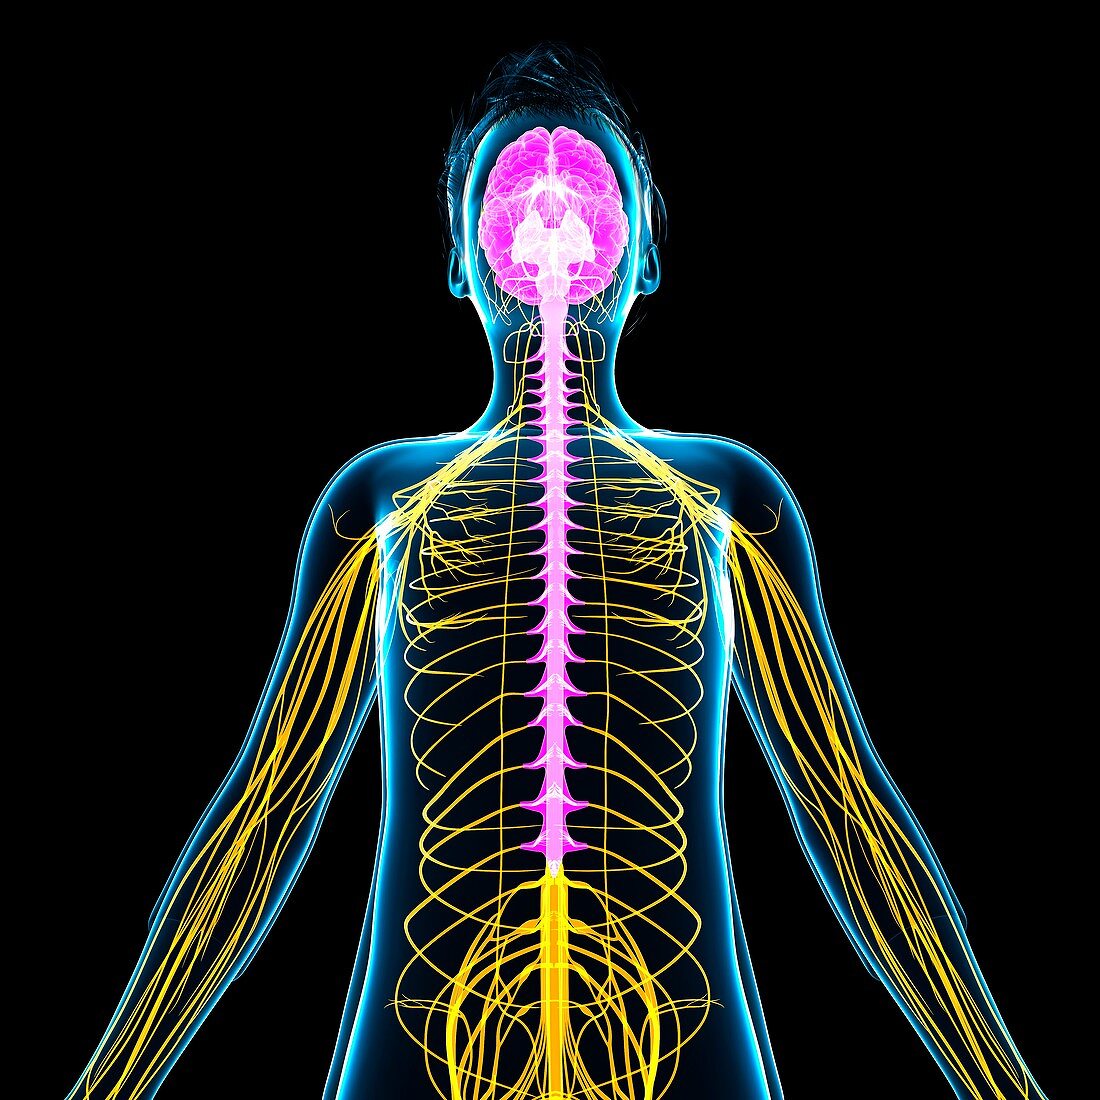 Boy's nervous system, illustration